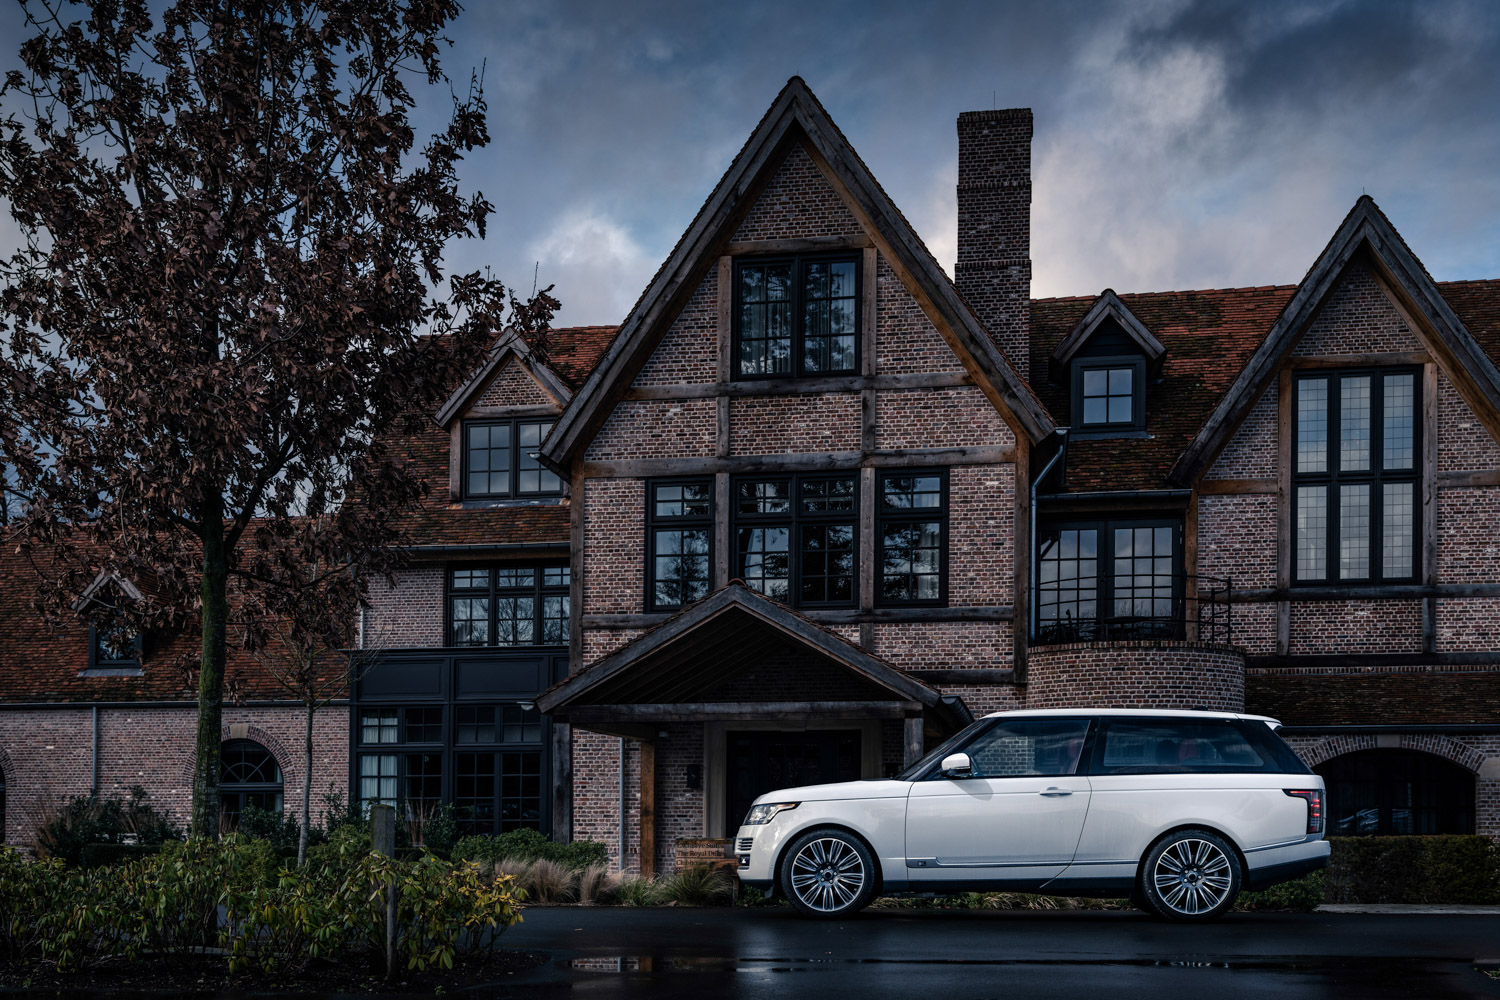 Adventum Coupe is the two-door Range Rover we never got